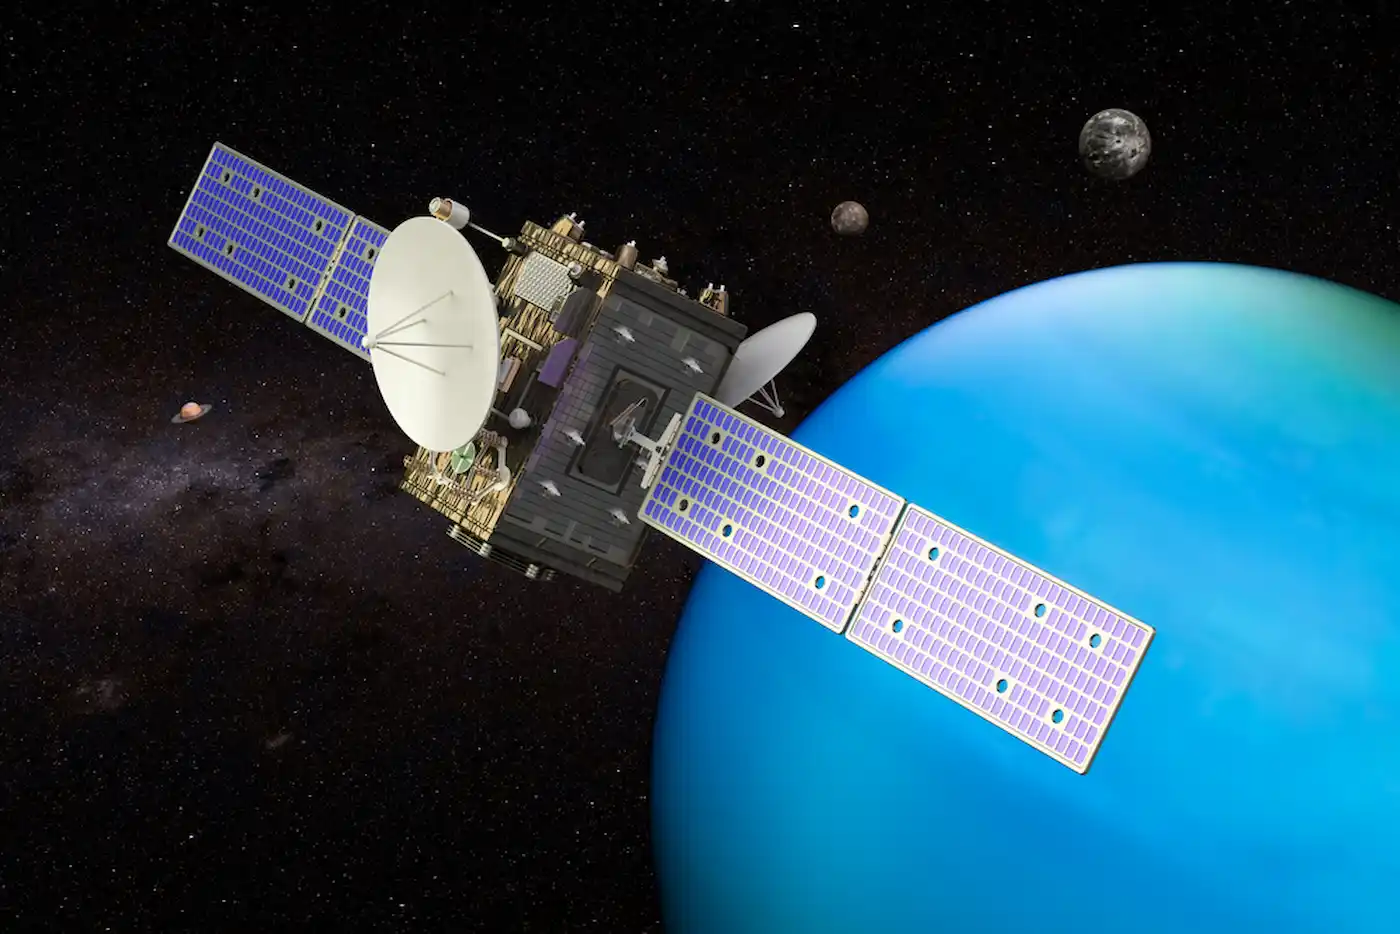 space probe orbiting Uranus